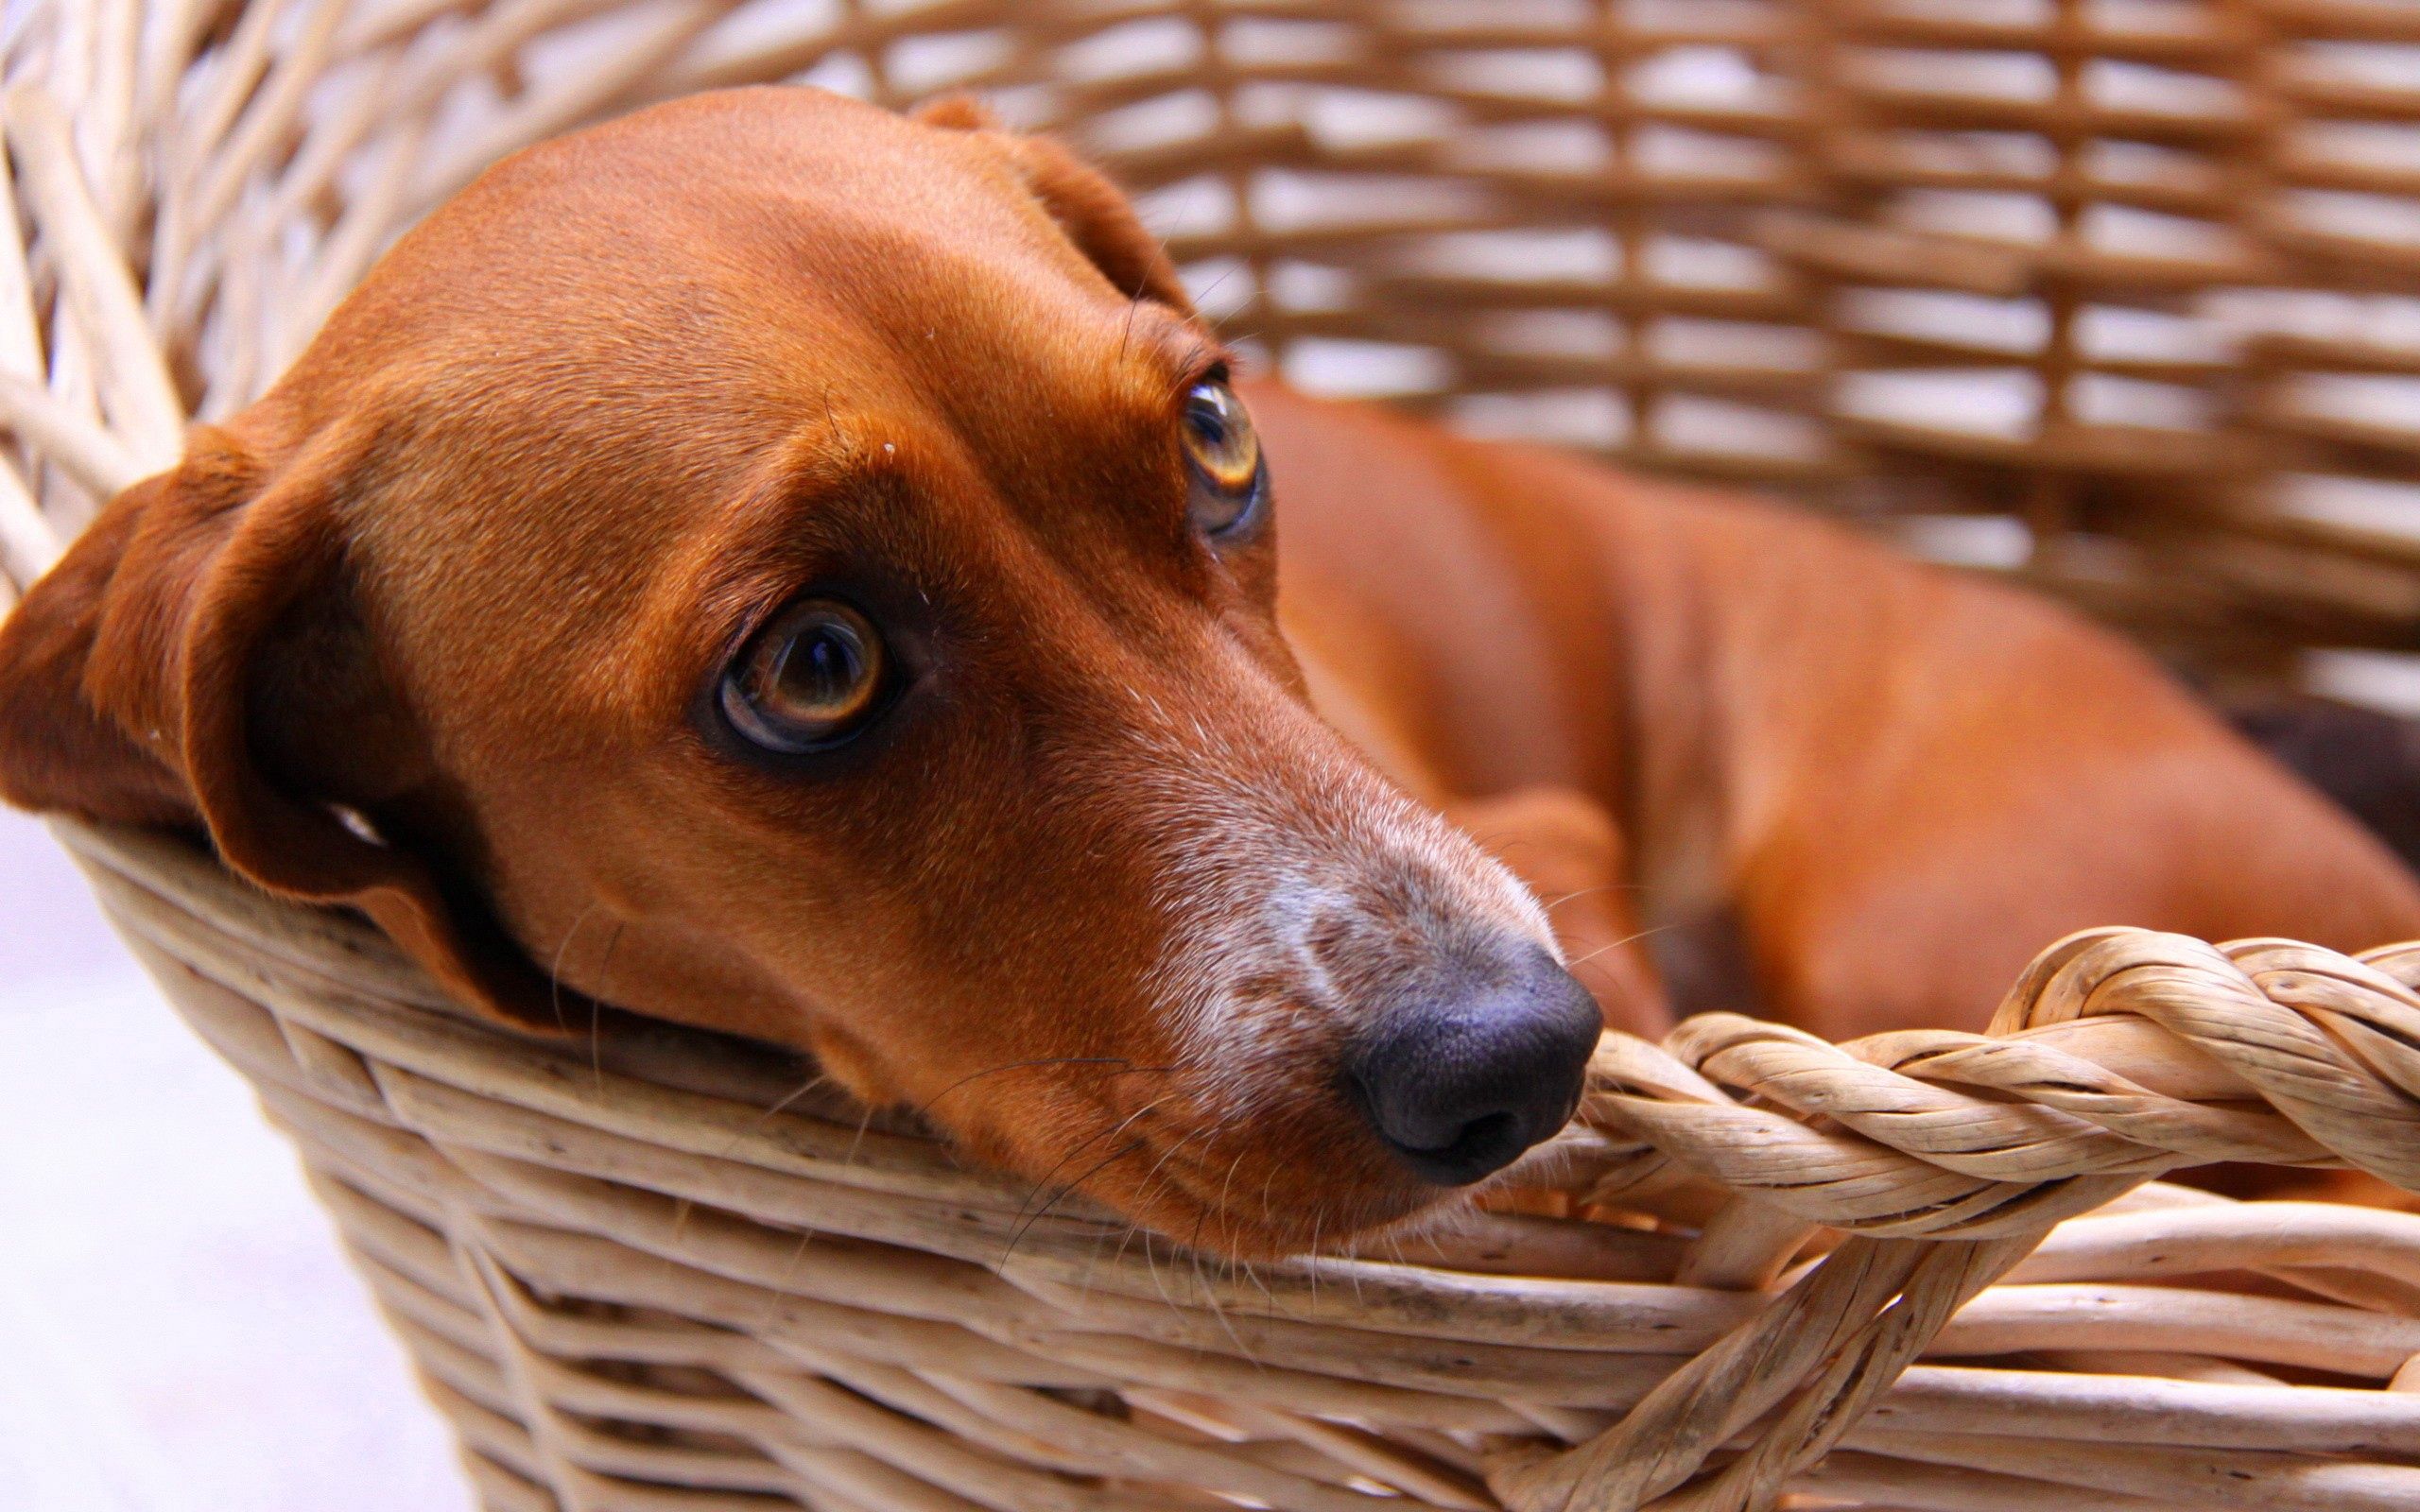 dachshund, animals, dog, fear, basket, expectation, waiting